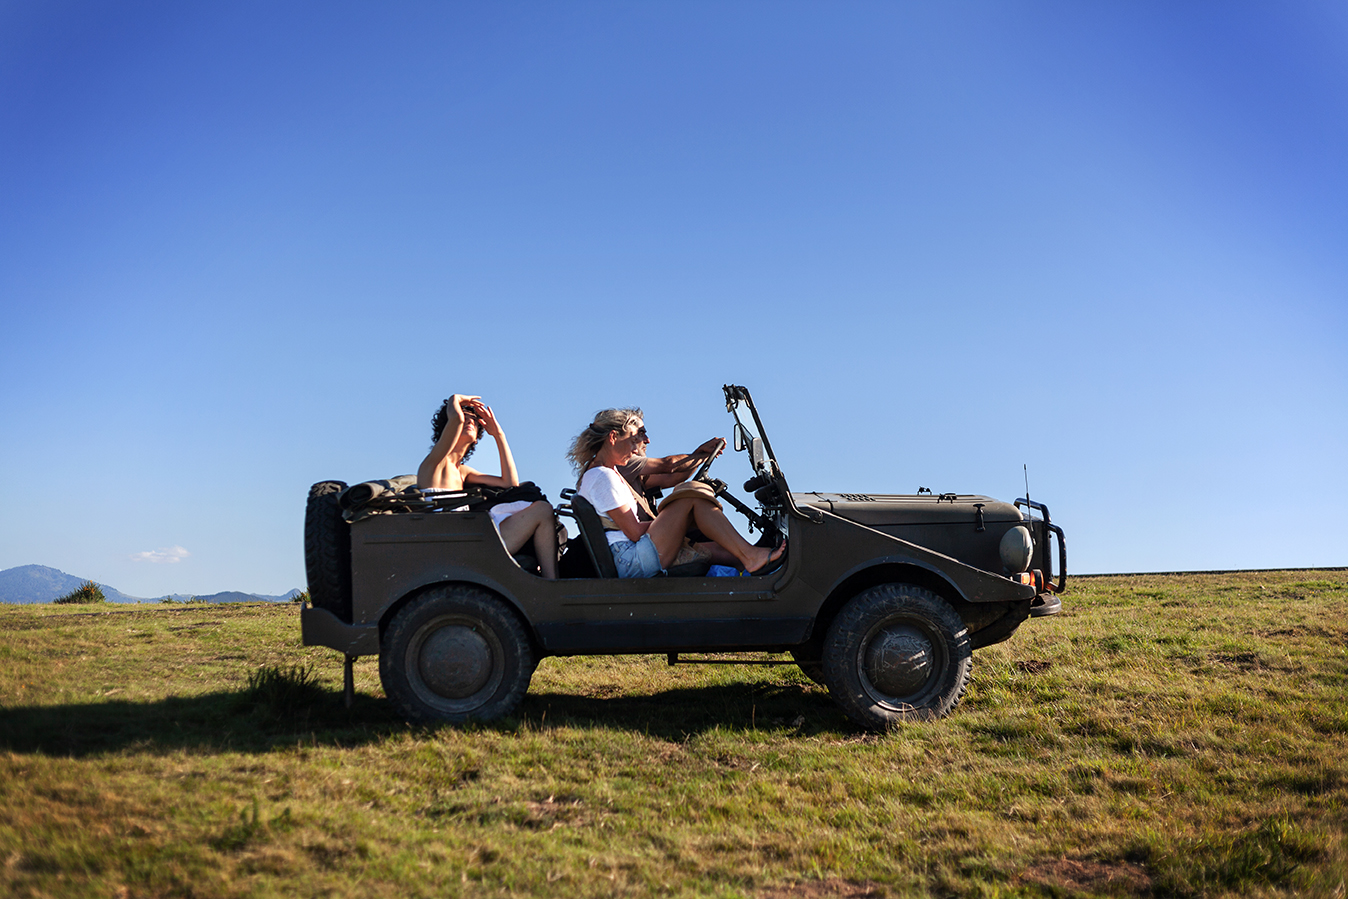 Photographie V de Vinster Summer 2020 Jeep La Soule